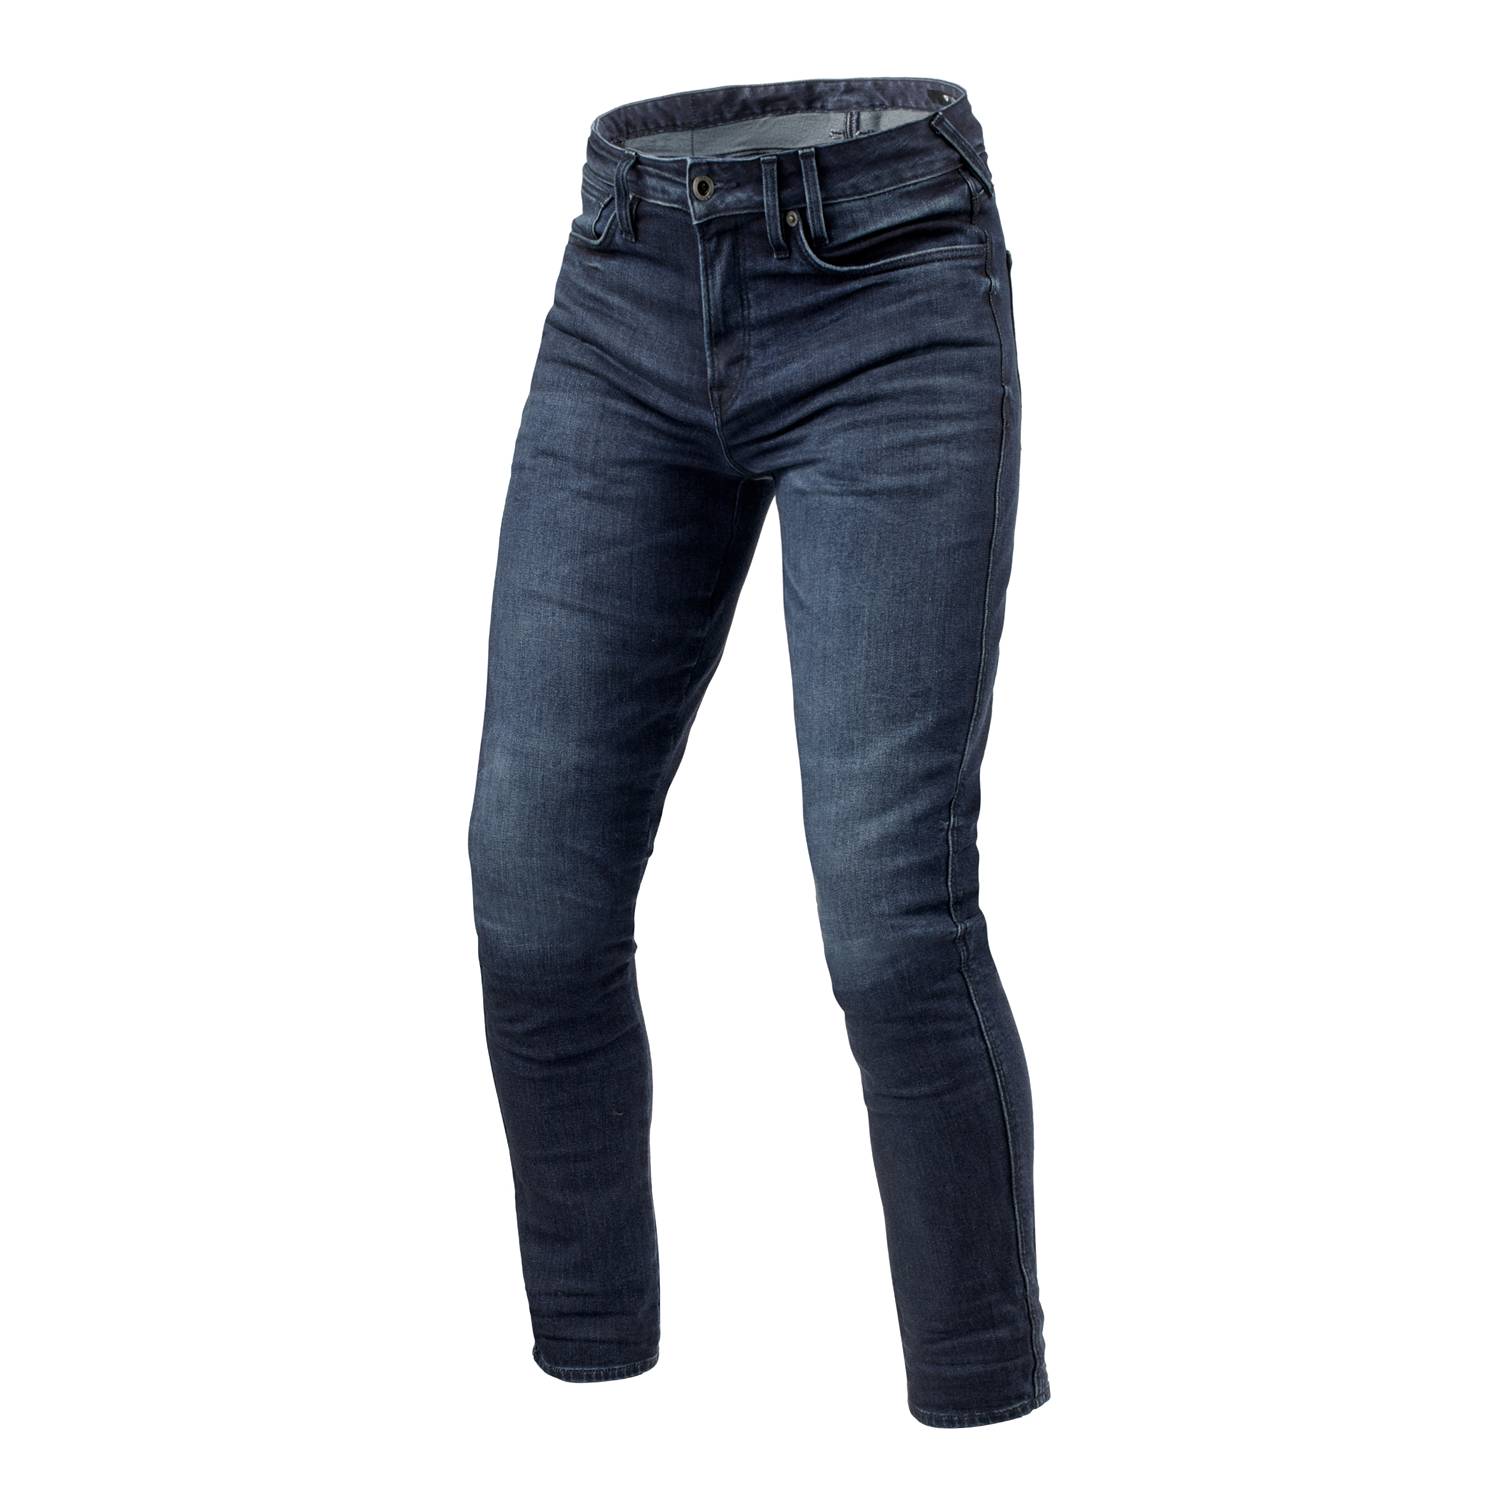 Image of REV'IT! Jeans Carlin SK Dark Blue Used L34 Motorcycle Jeans Size L34/W34 EN